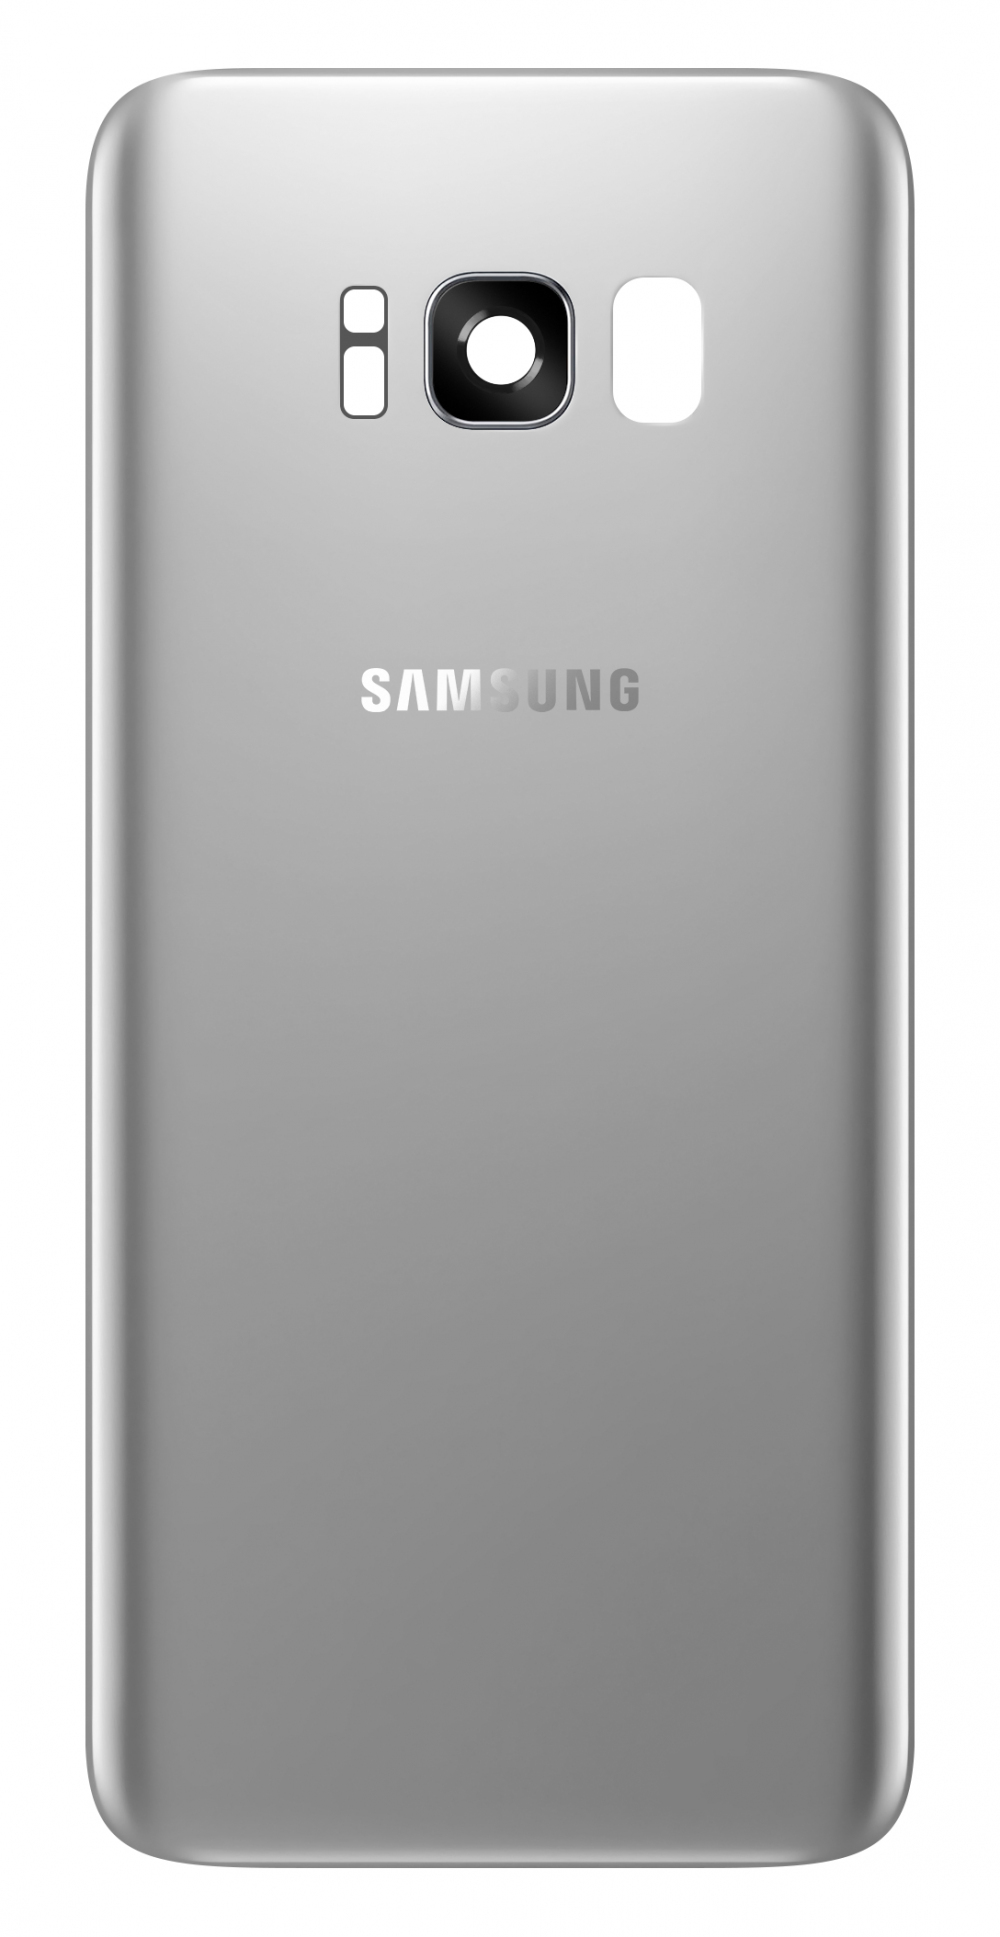 capac-baterie-samsung-galaxy-s8-2B-g955-2C-cu-geam-blitz---geam-camera-spate-2C-argintiu-2C-swap